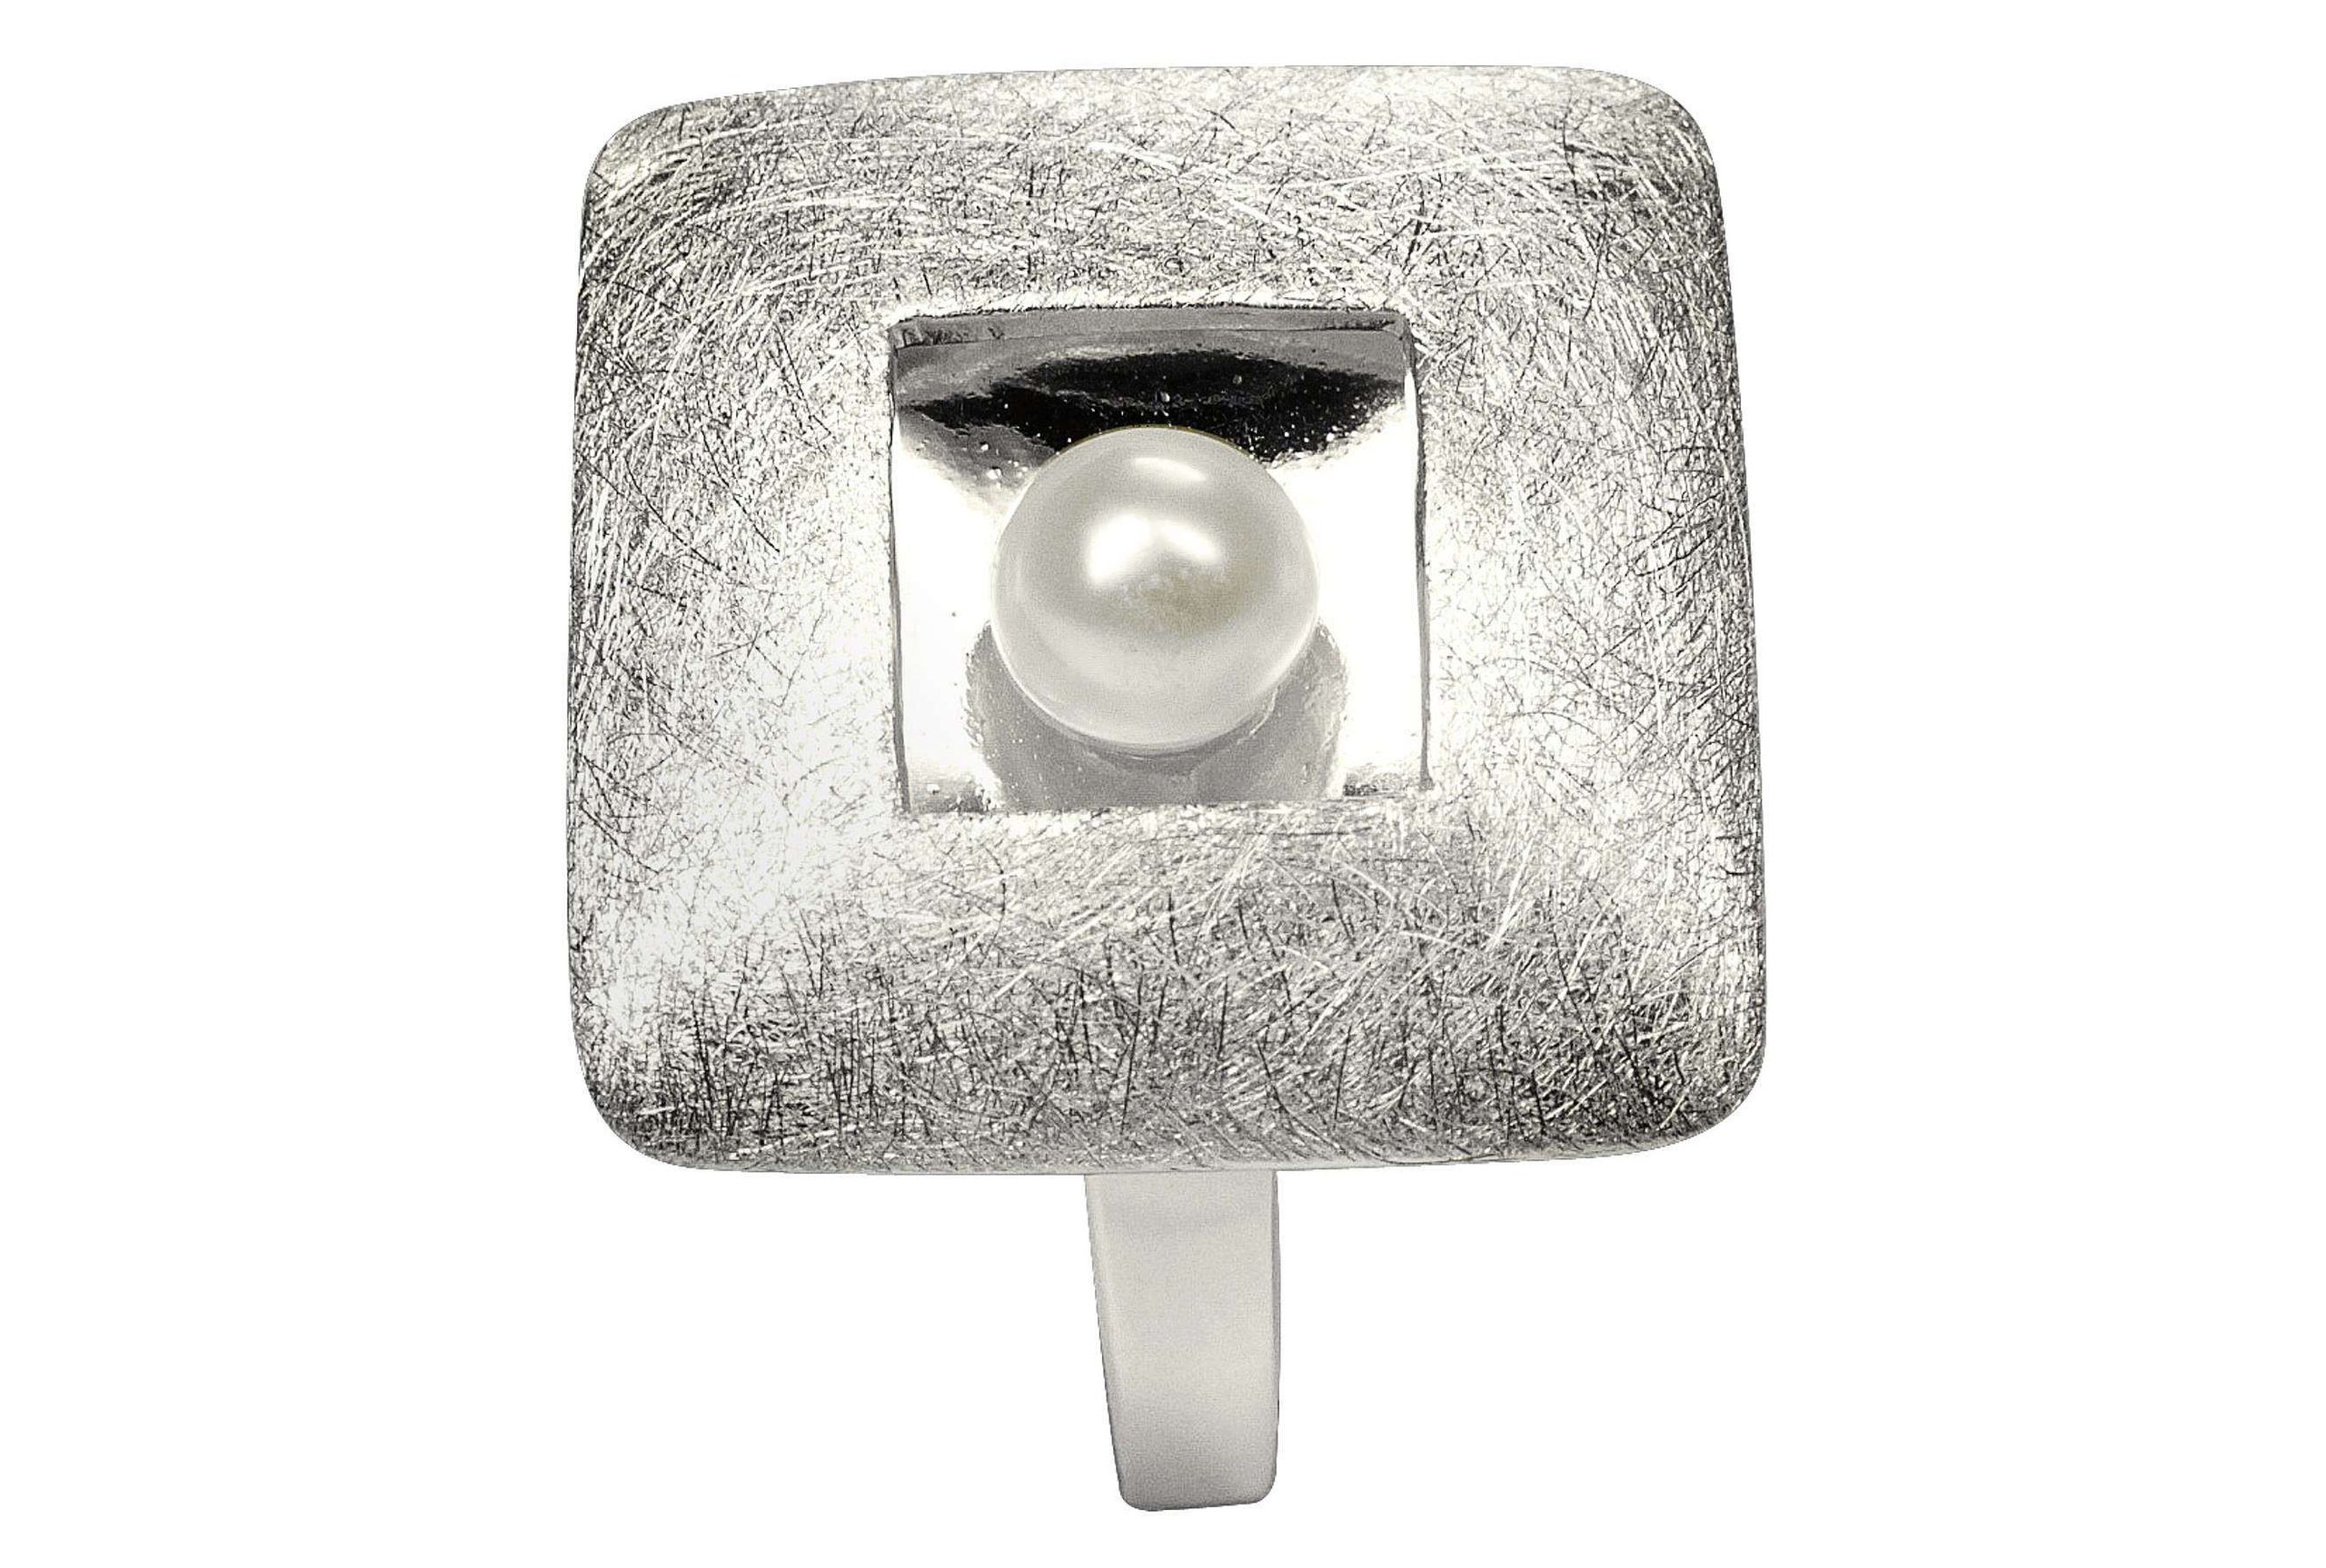 Damenring aus Silber mit einer Perle, die mittig in einem quadratischen Zierelement sitzt. Die Ringschiene ist klassisch gearbeitet.